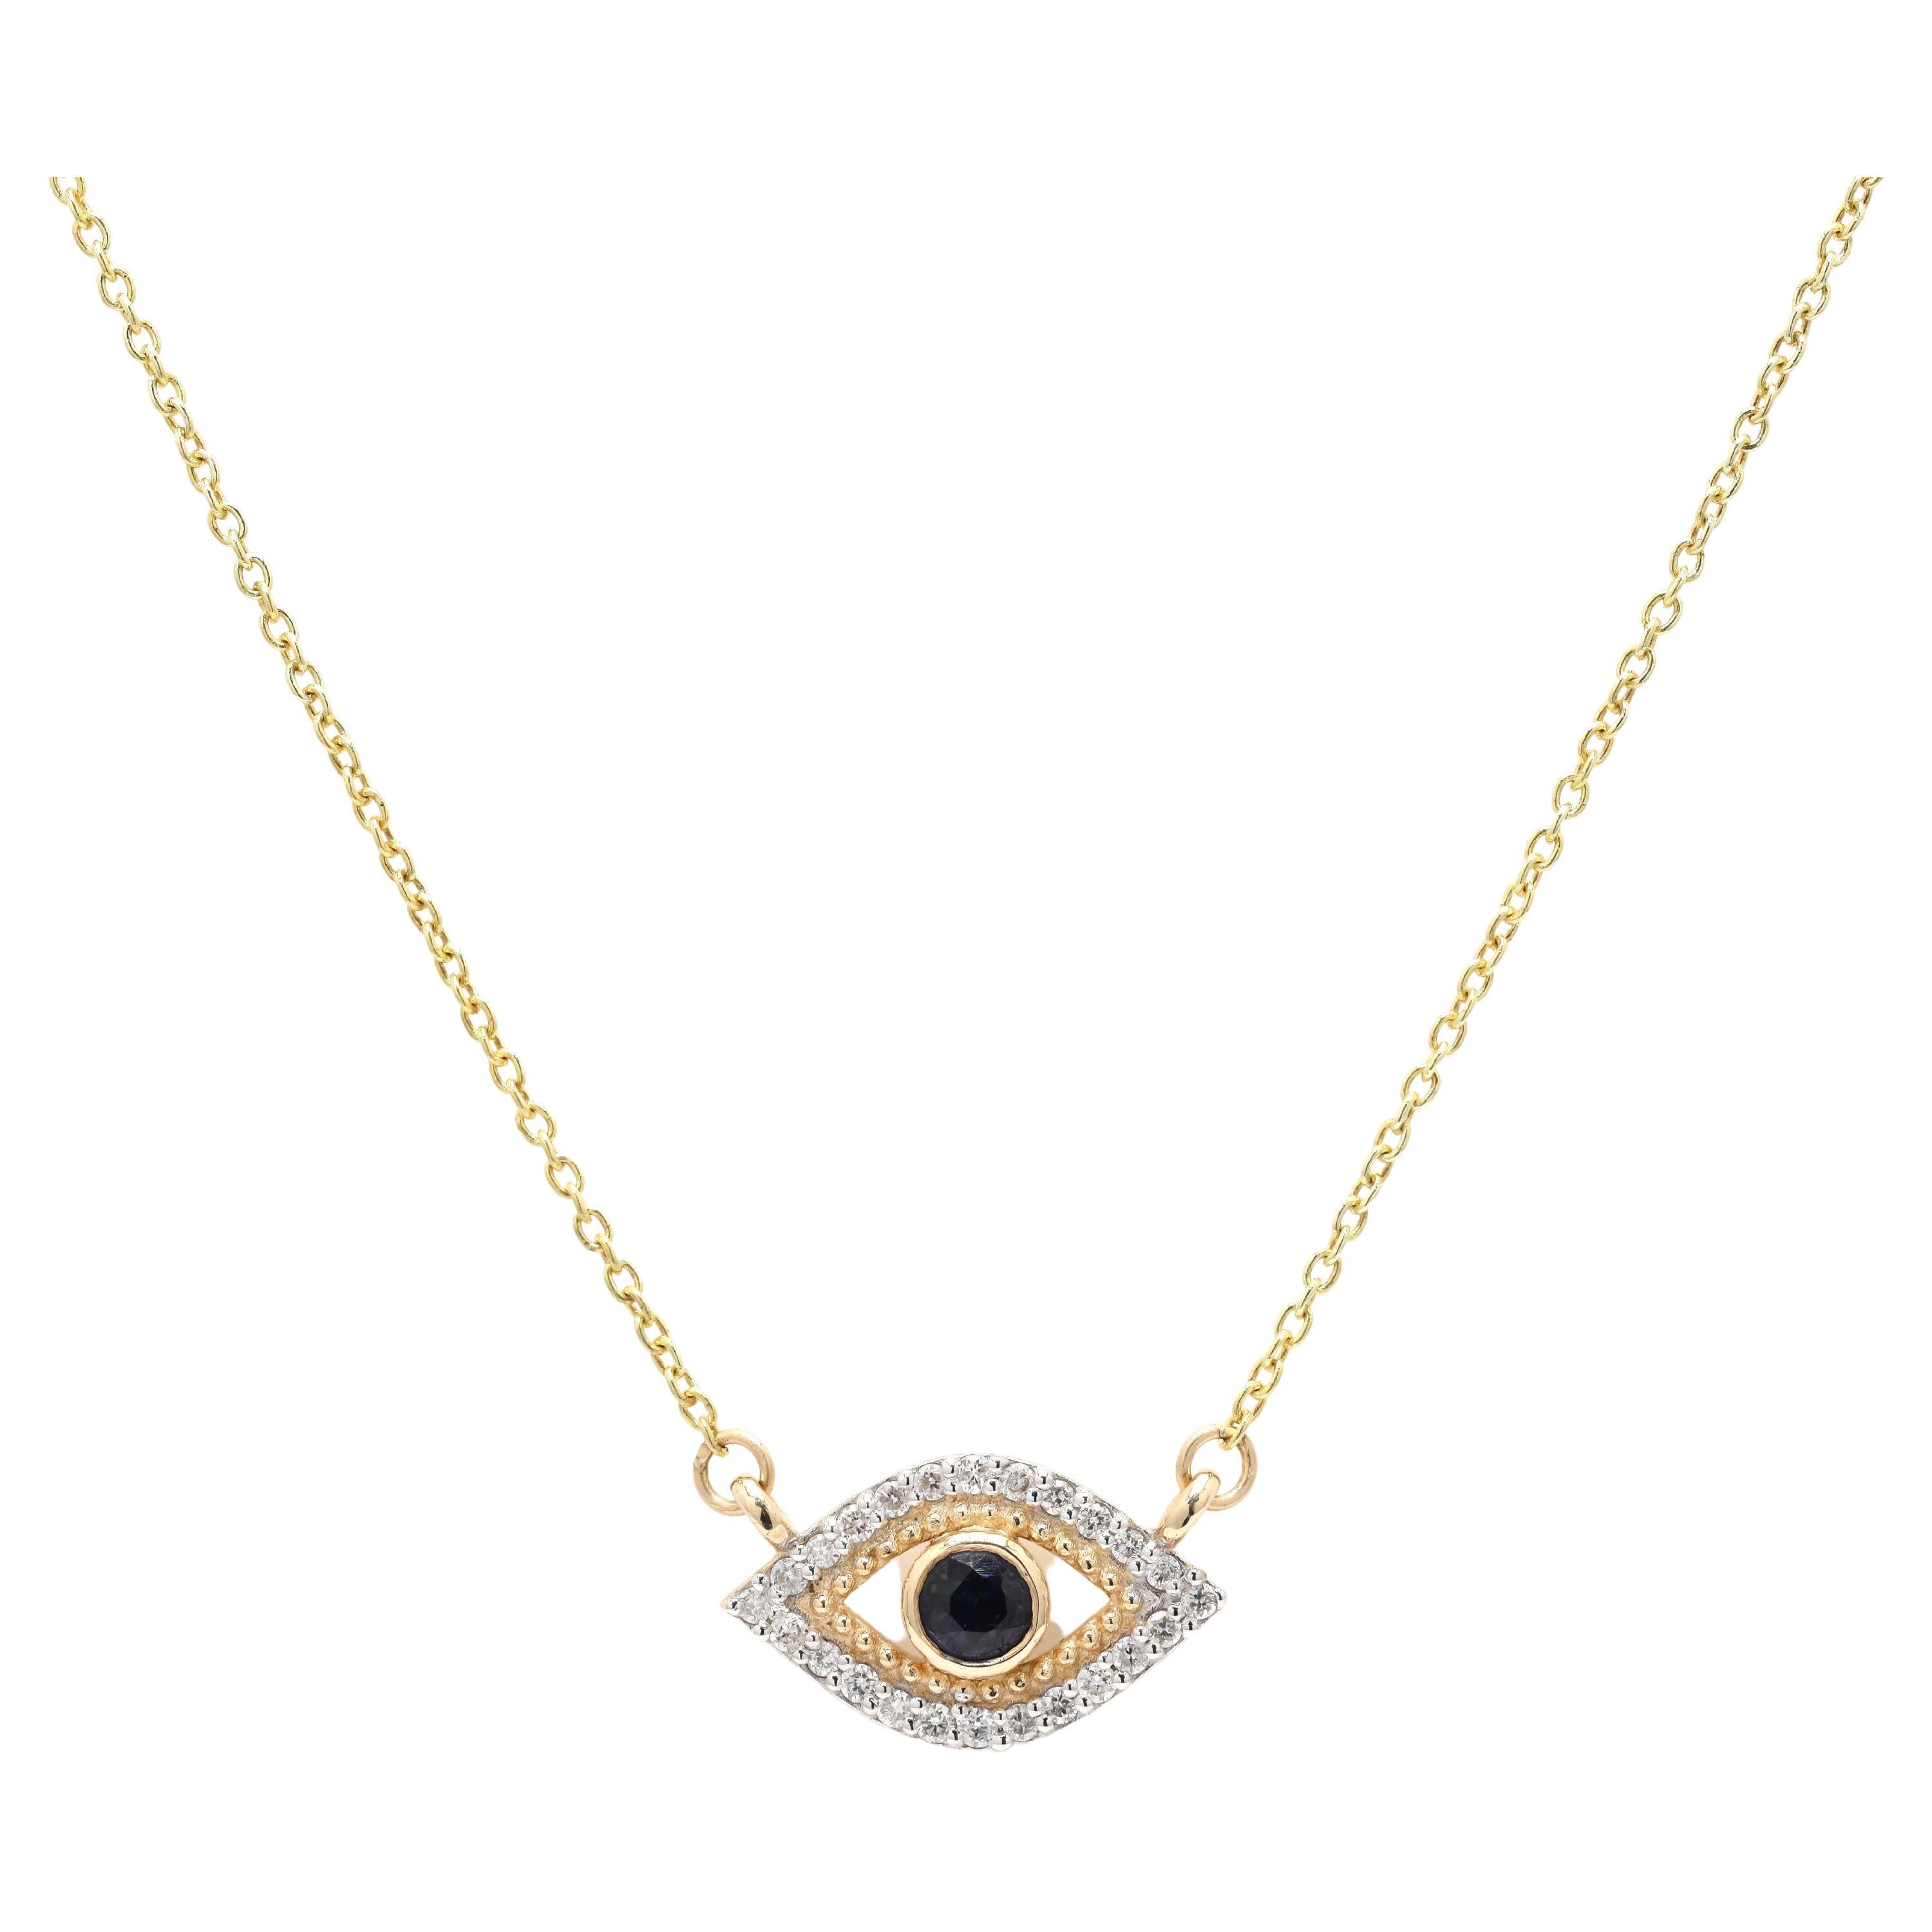 Collier Evil Eye en or jaune 14 carats avec saphir bleu et diamants, mettant en valeur le collier